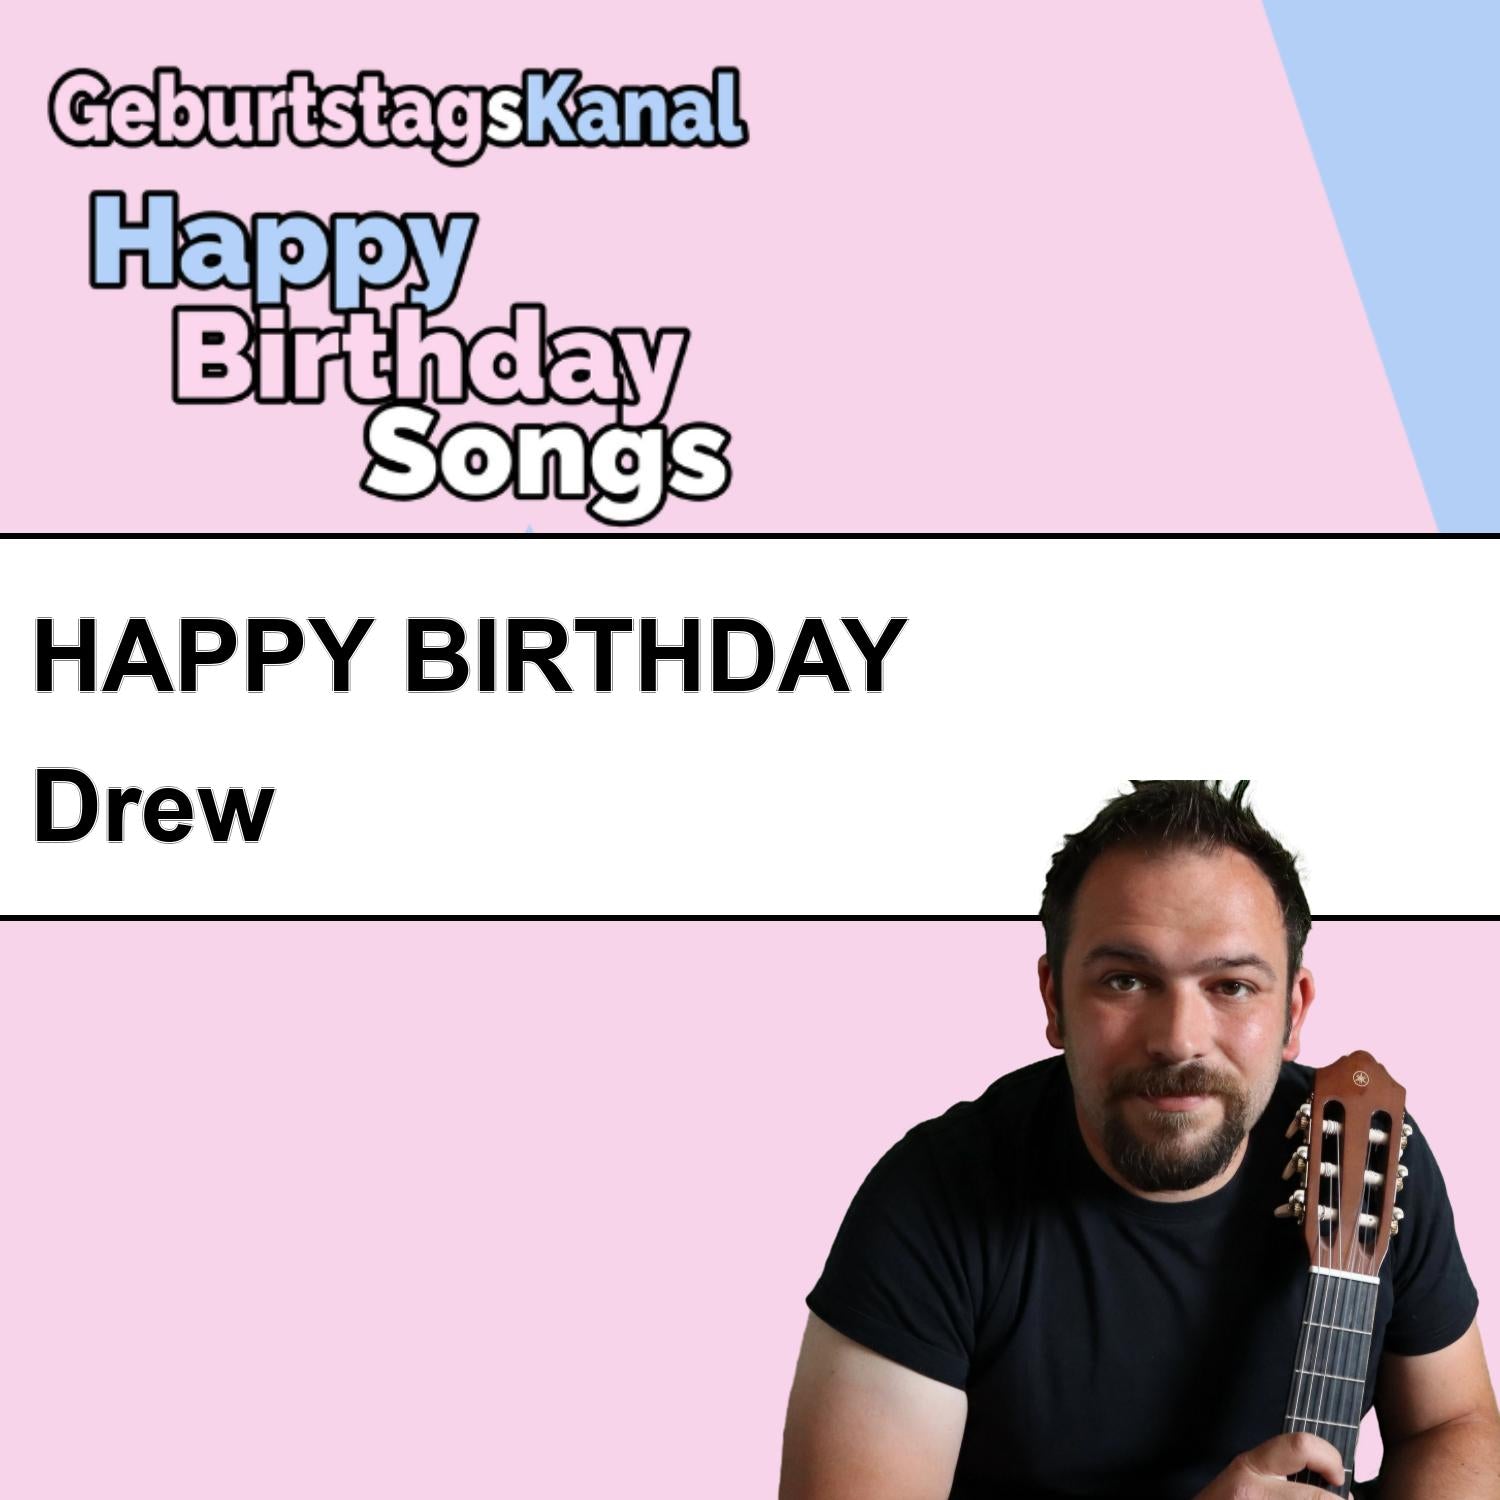 Produktbild Happy Birthday to you Drew mit Wunschgrußbotschaft